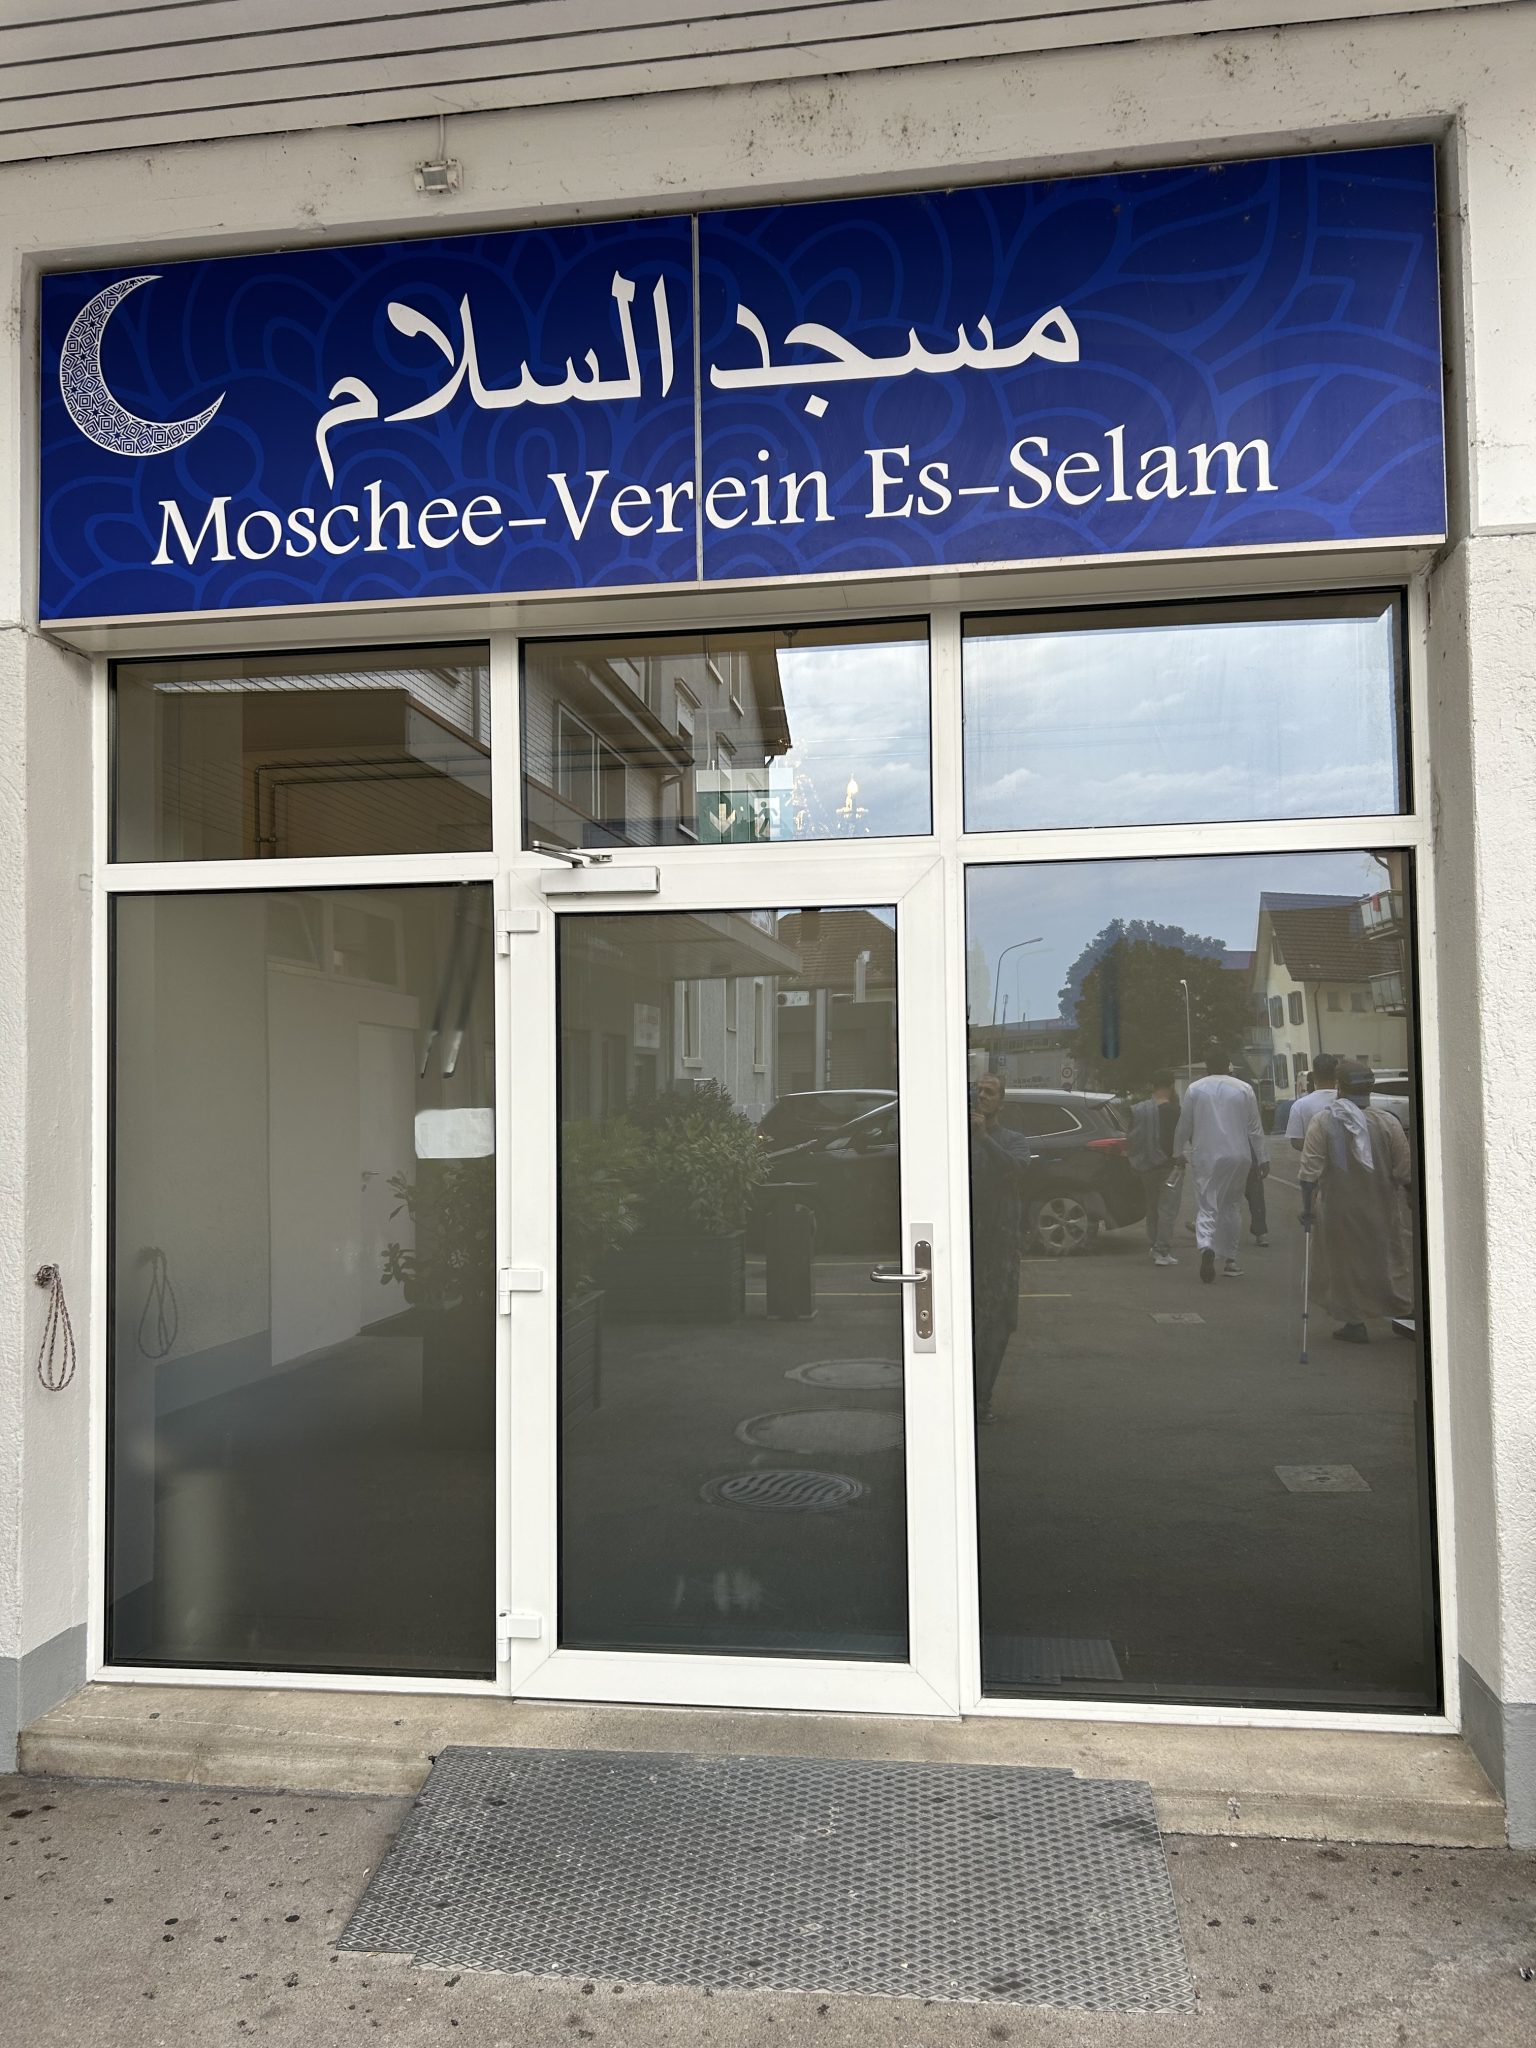 Moschee-Verein Es-Selam